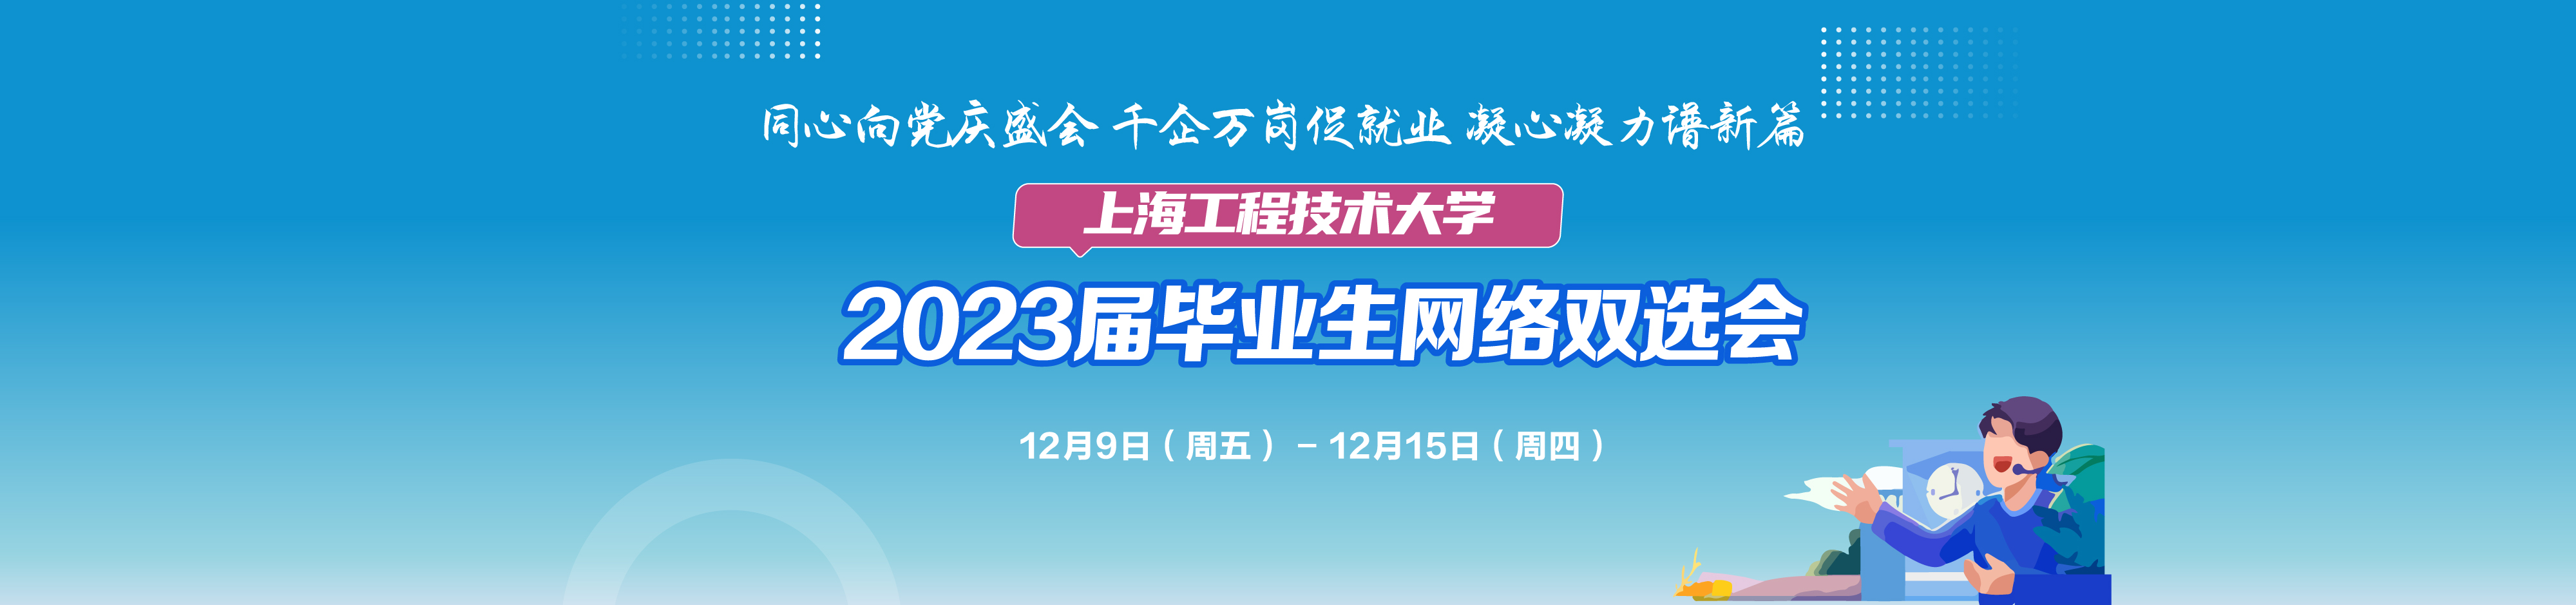 【网络双选会】上海工程技术大学2023届毕业生网络双选会